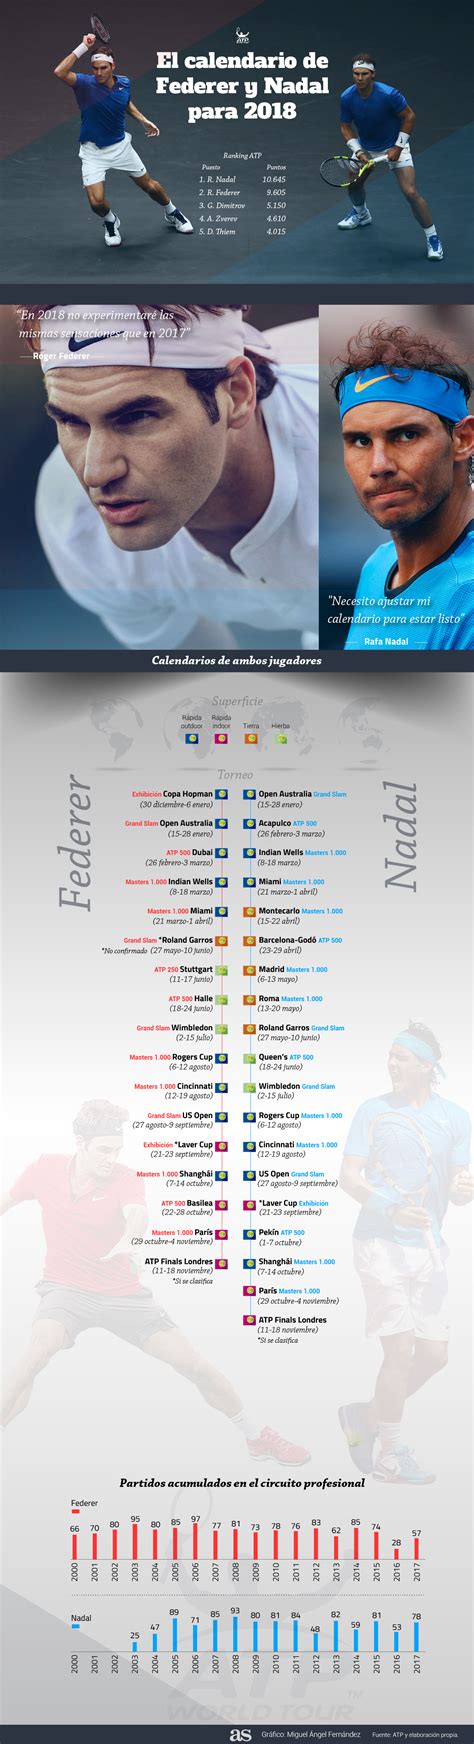 TENIS: Los posibles calendarios de Nadal y Federer en 2018 ...